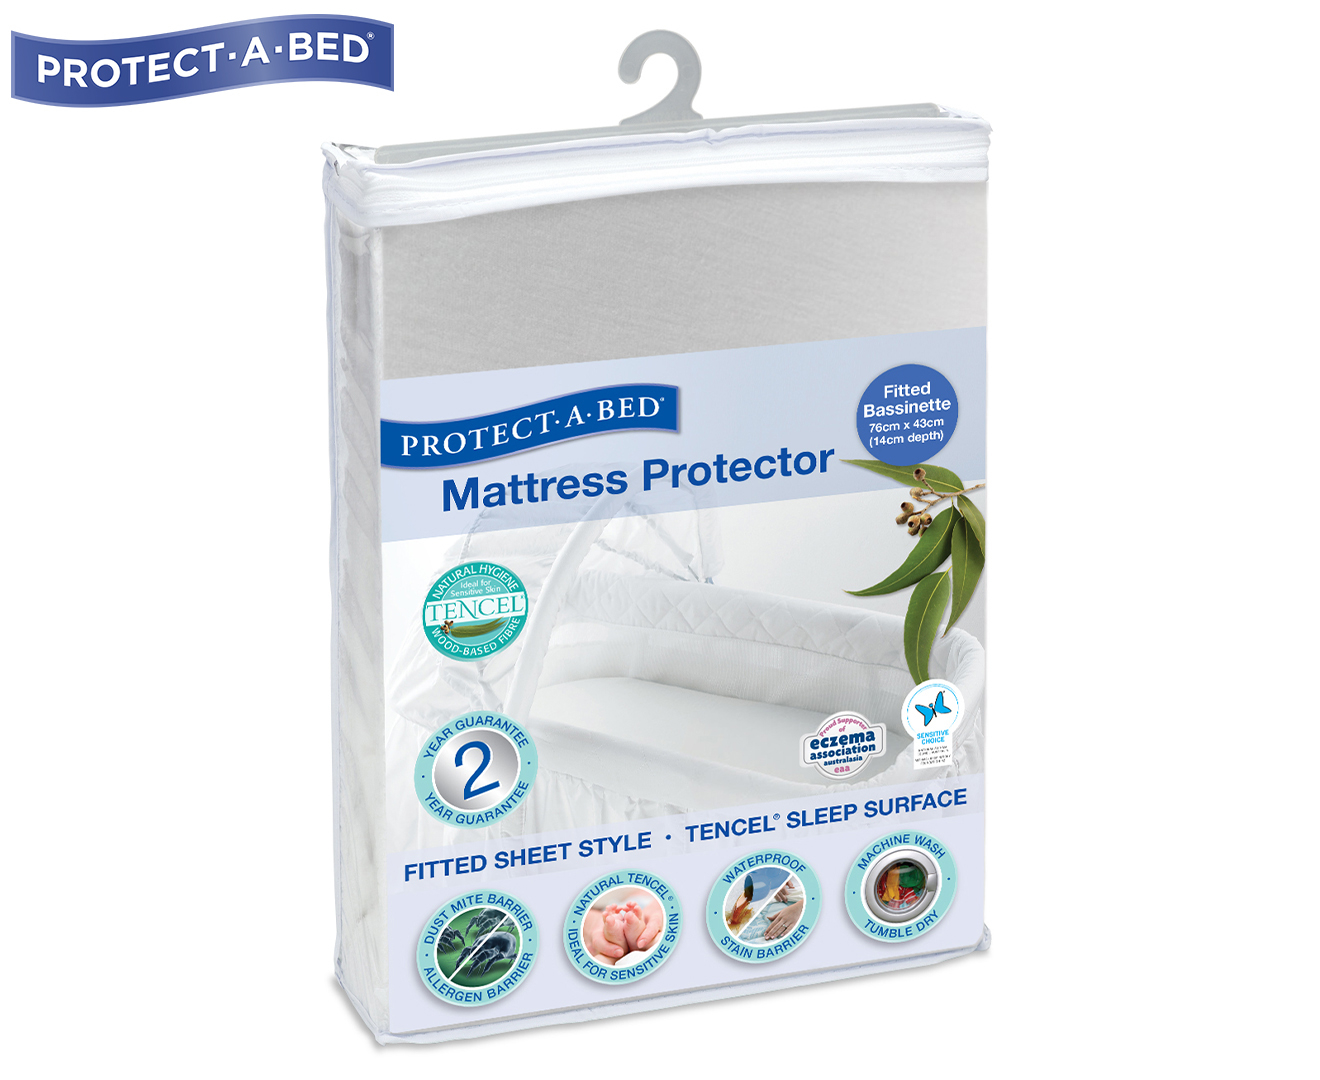 protect a bed bassinet tencel mattress protector